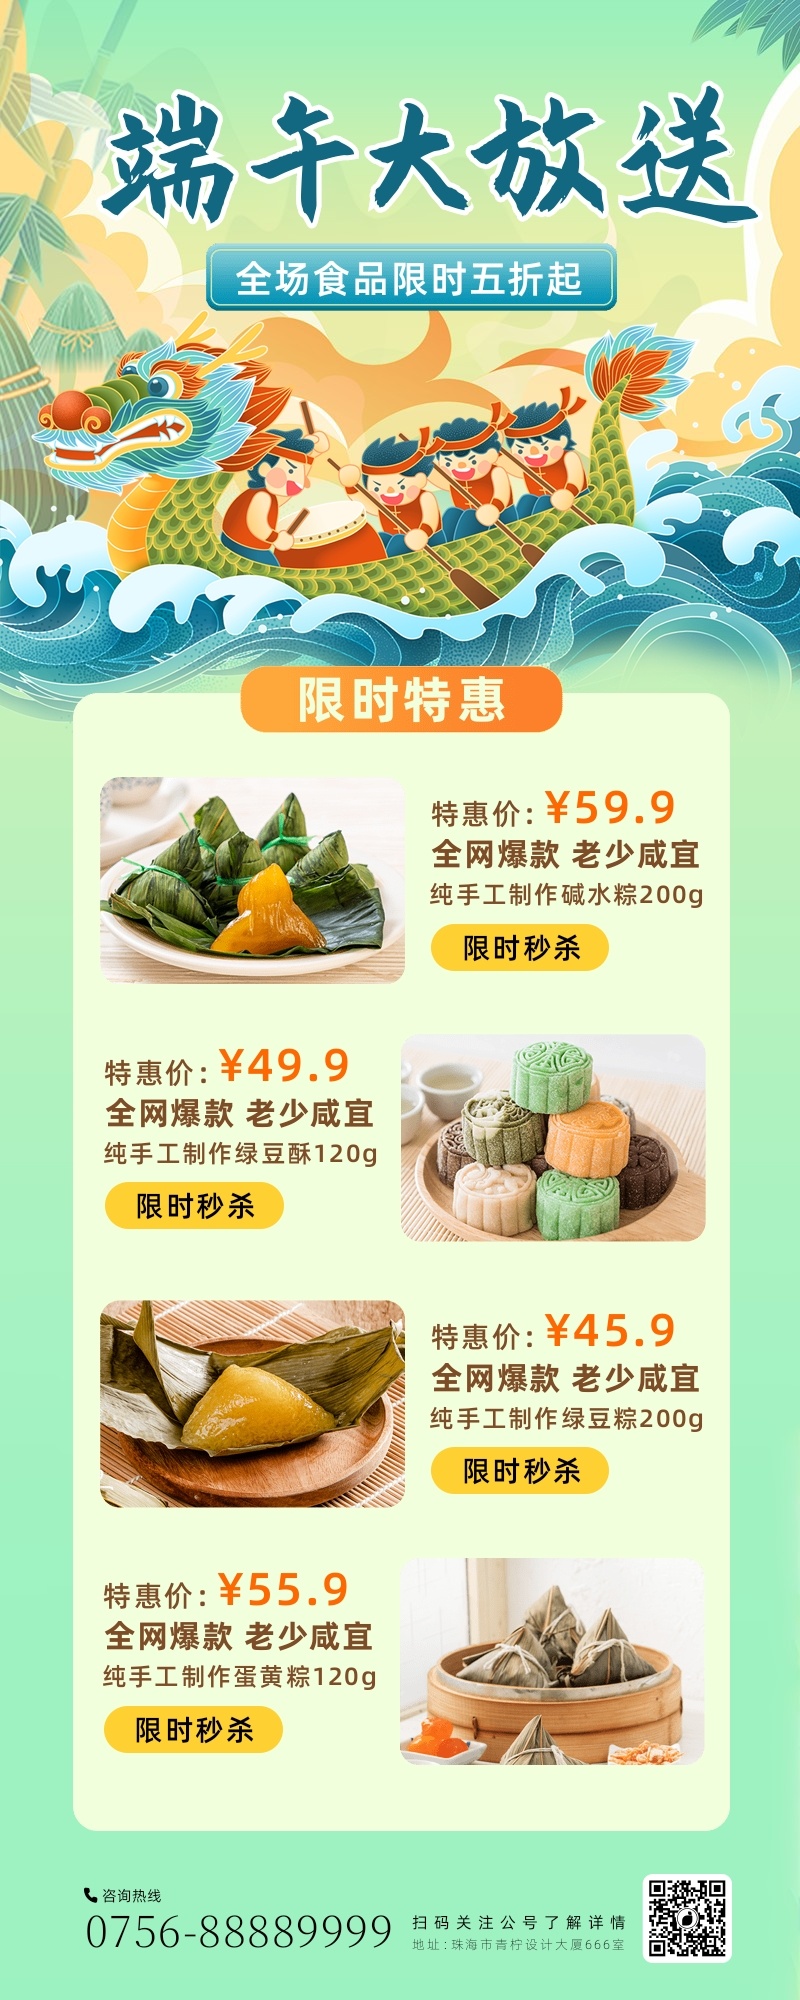 中国风餐饮美食端午促销长图海报